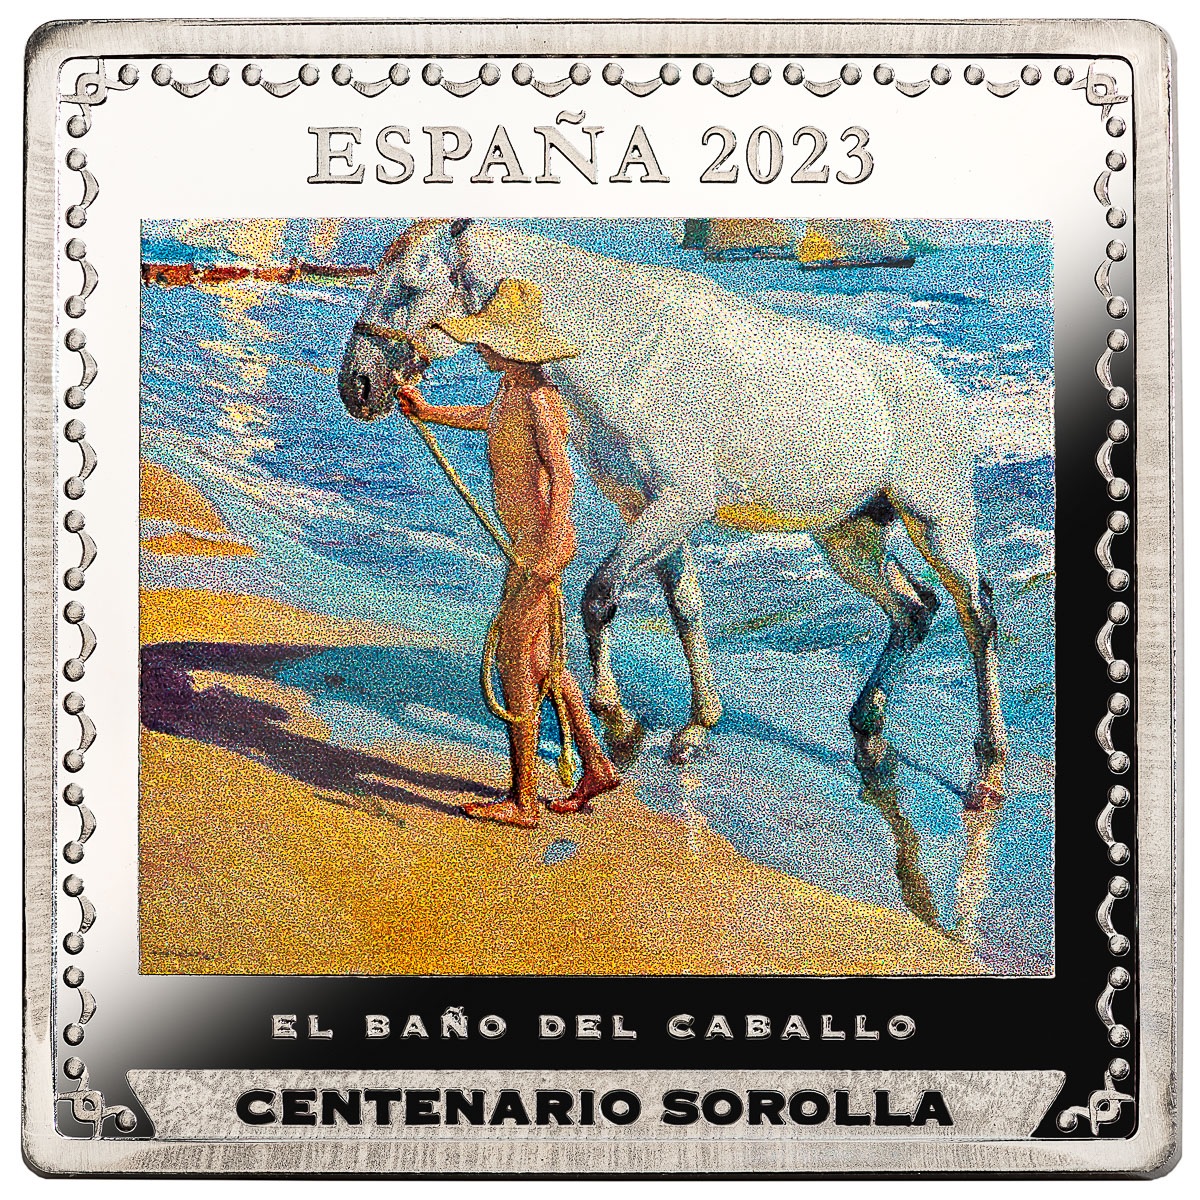 (EUR05.Proof.2023.92937003) 10 euro Spain 2023 Proof silver - The Horse s Bath, Joaquín Sorolla y Bastida Obverse (zoom)